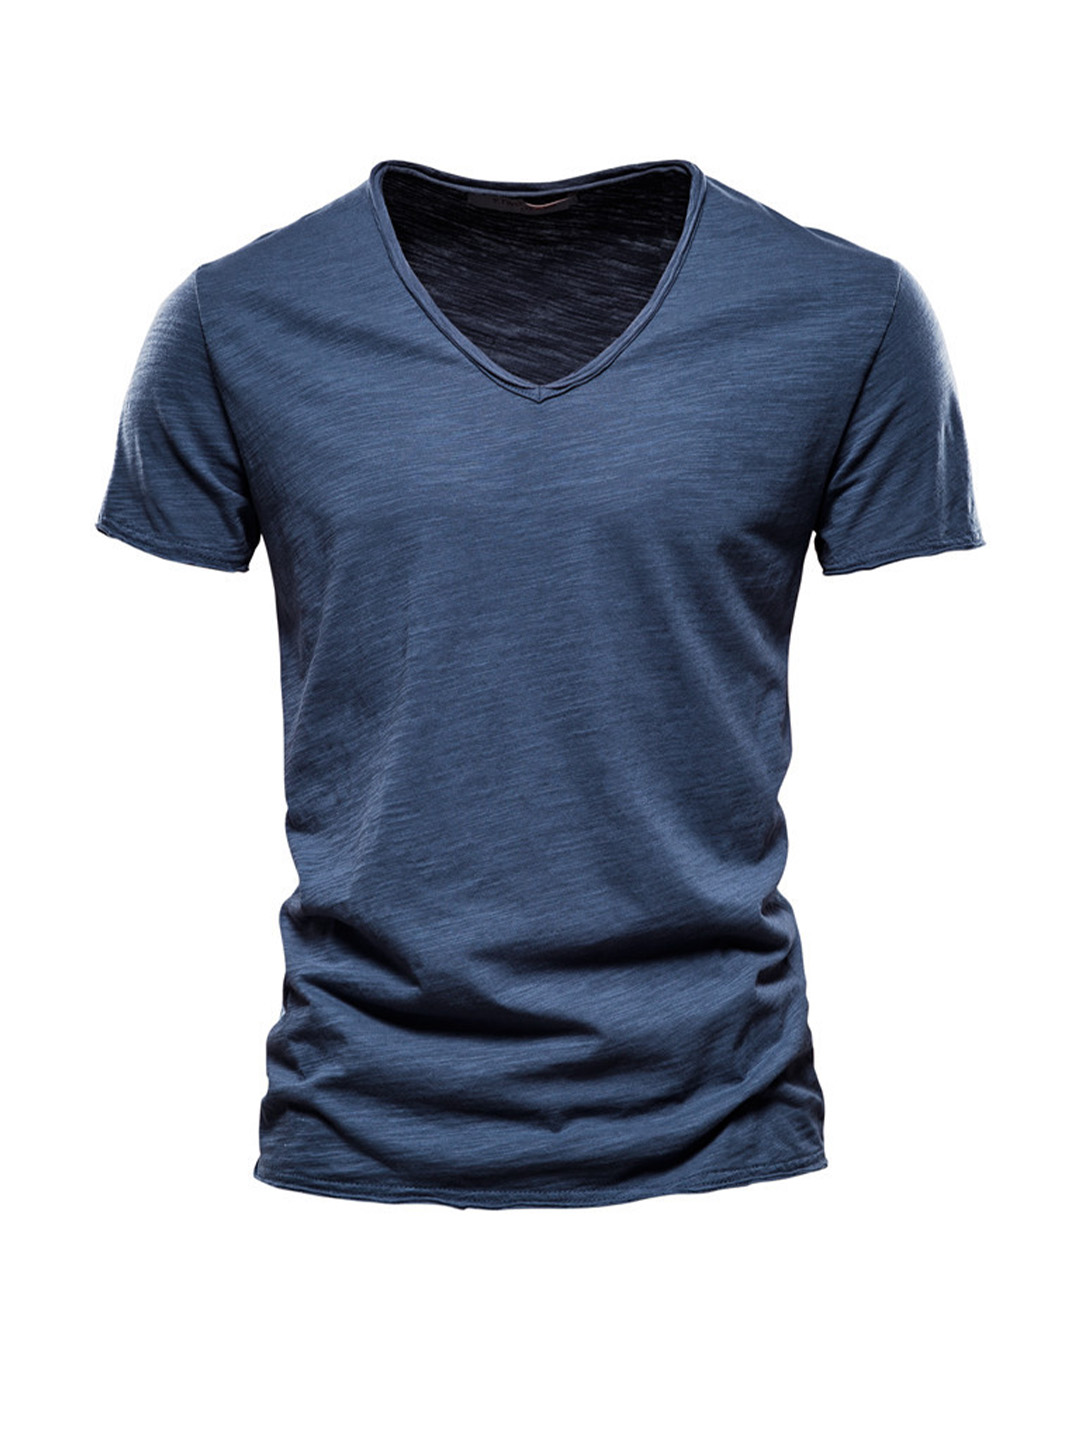 Richard Solid Color V-neck T-shirt